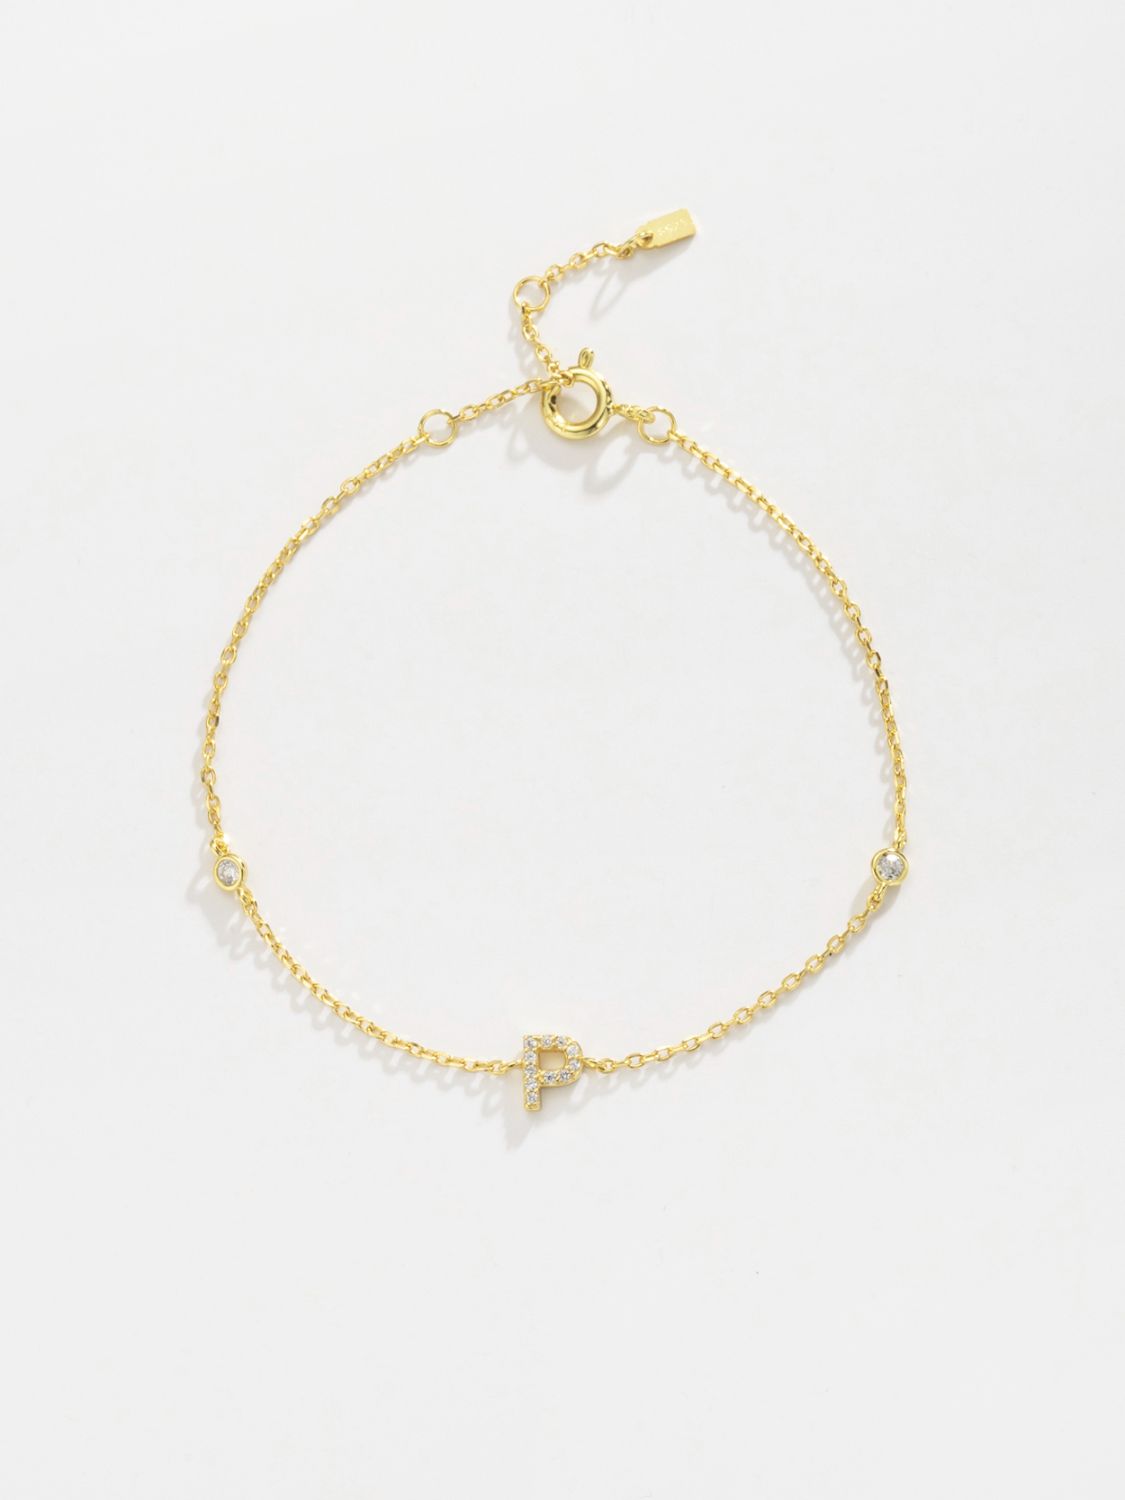 L To P Zircon 925 Sterling Silver Bracelet - Women’s Jewelry - Bracelets - 27 - 2024